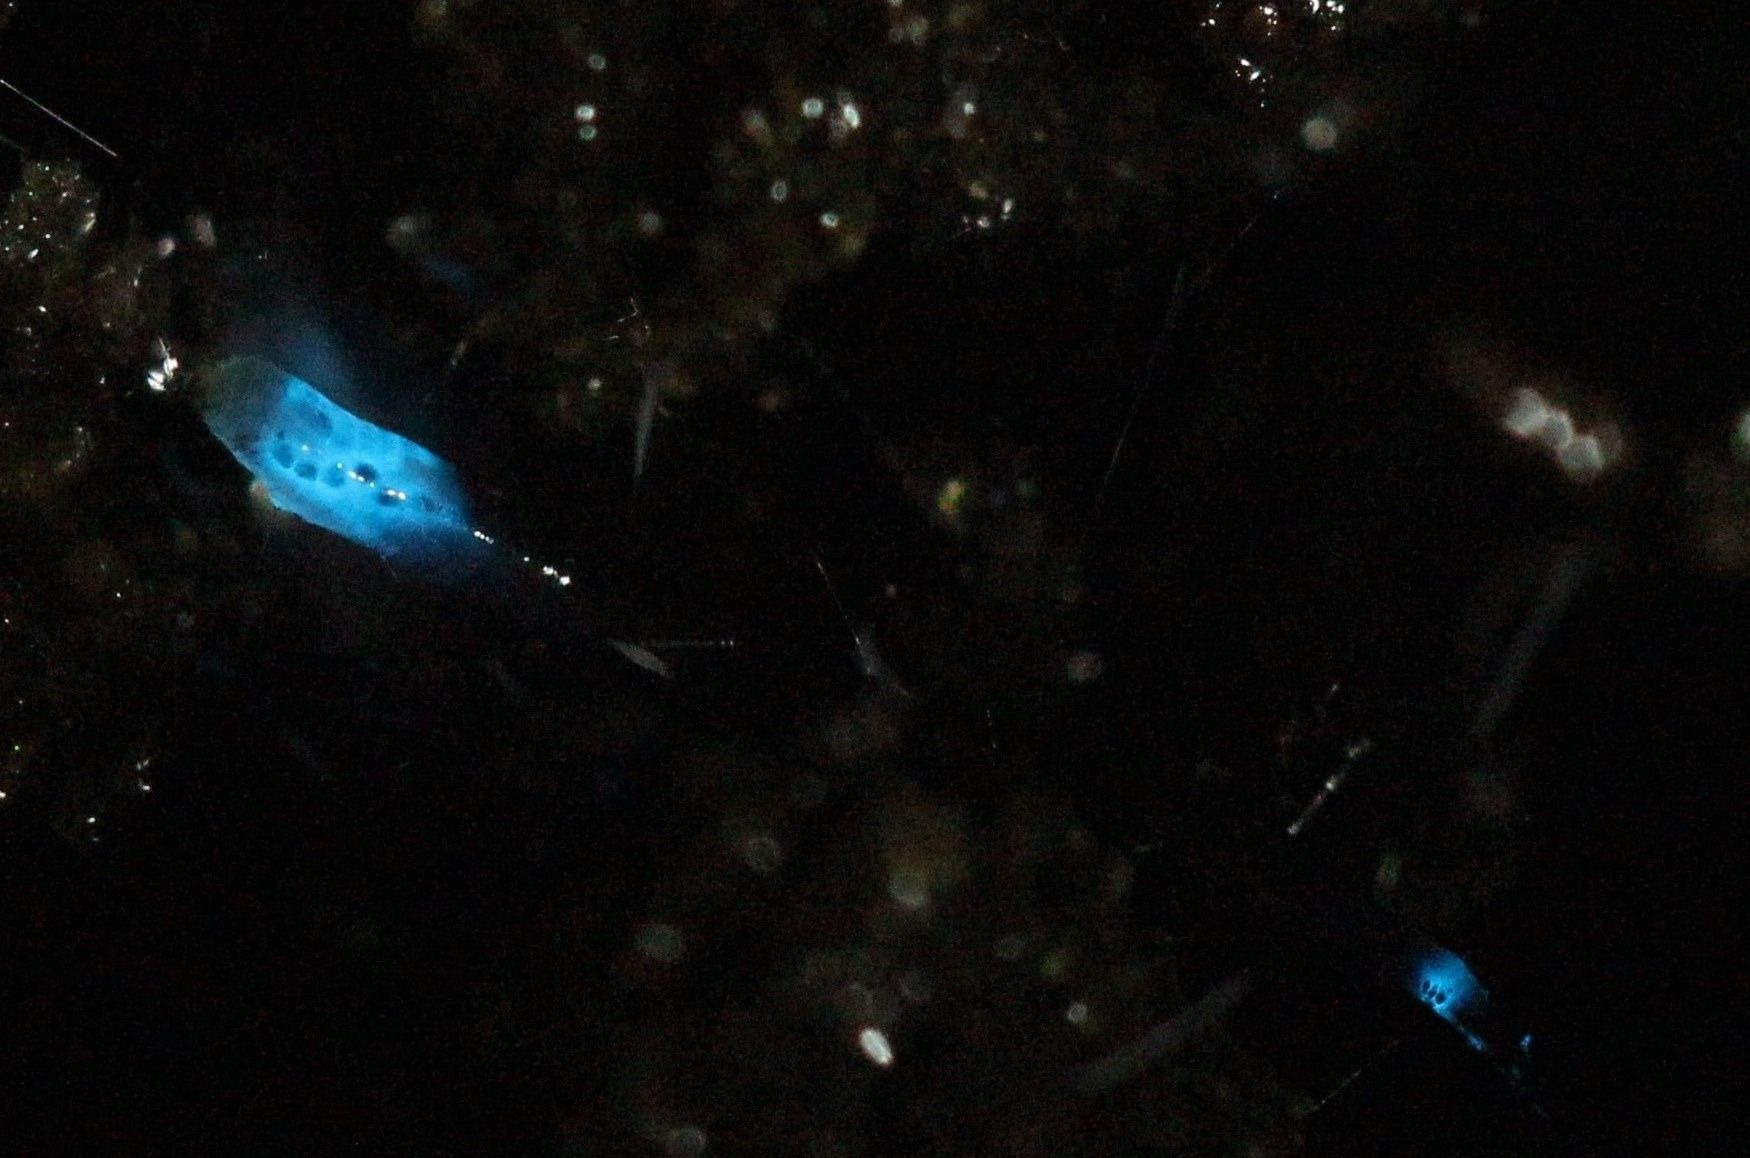 Estudo foca Orfelia bioluminescence, que emite luz azul (Foto: Acervo da pesquisa)